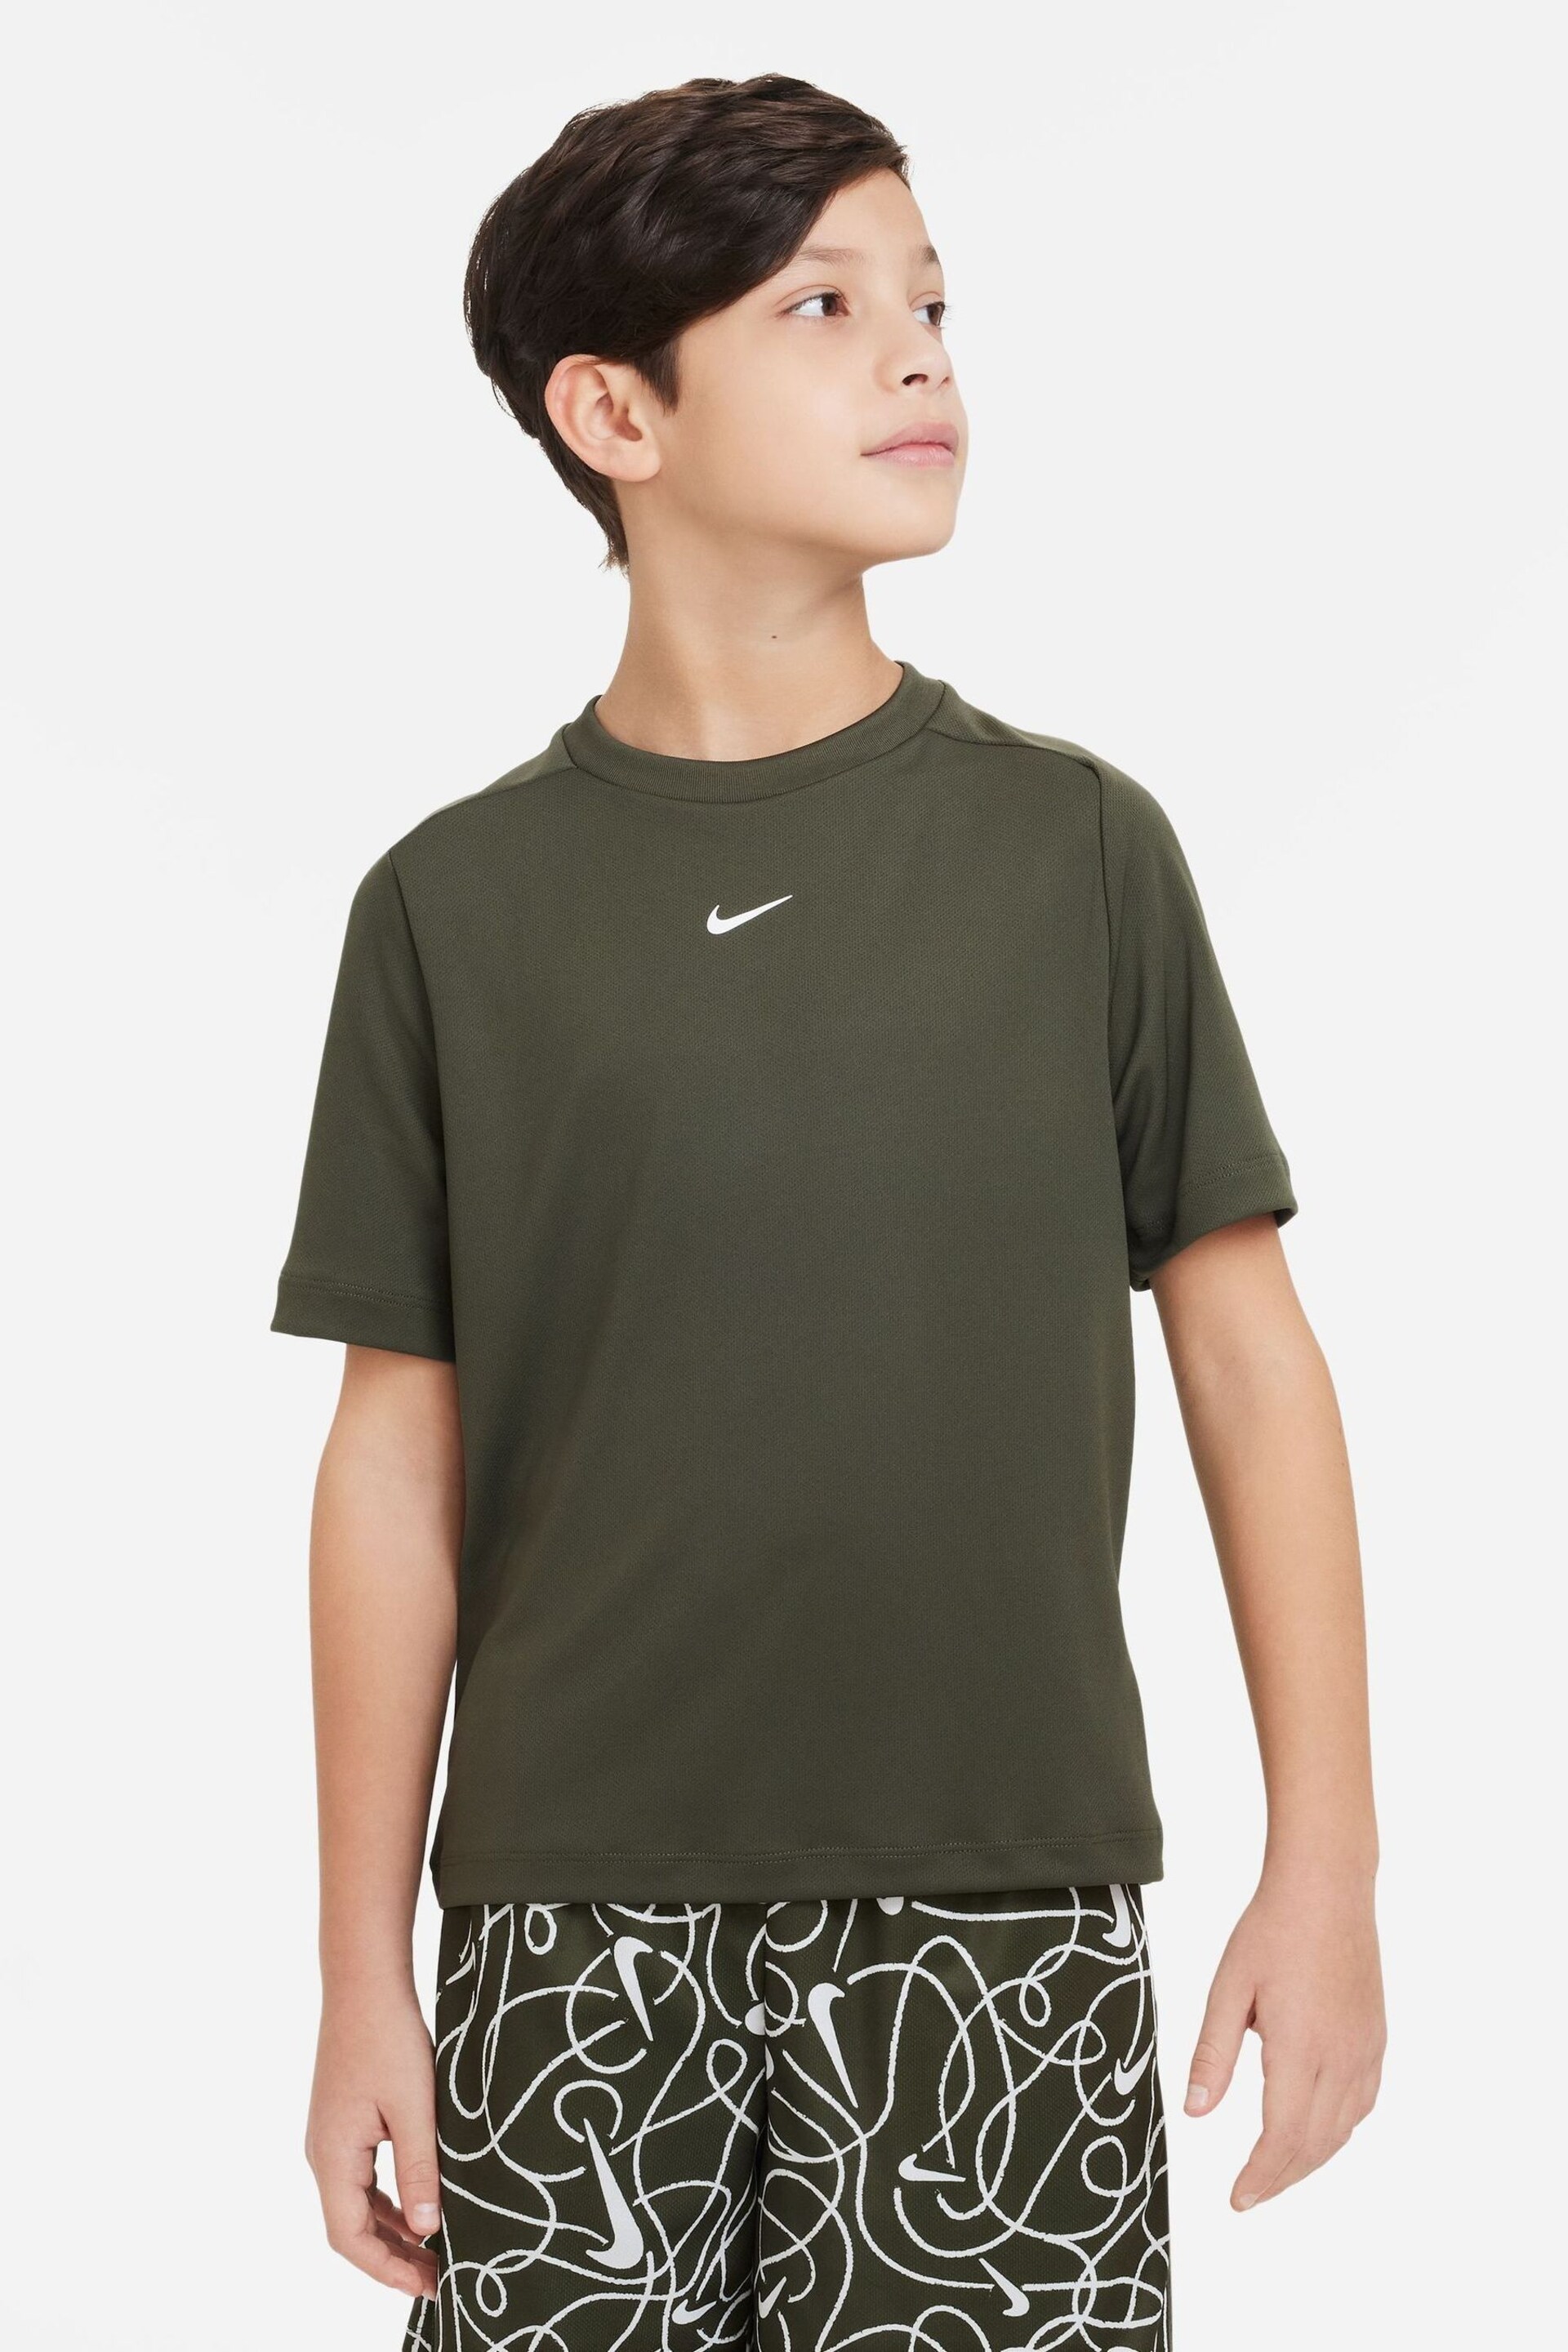 Nike Khaki Green Dri-FIT Multi + Training T-Shirt - Image 1 of 4